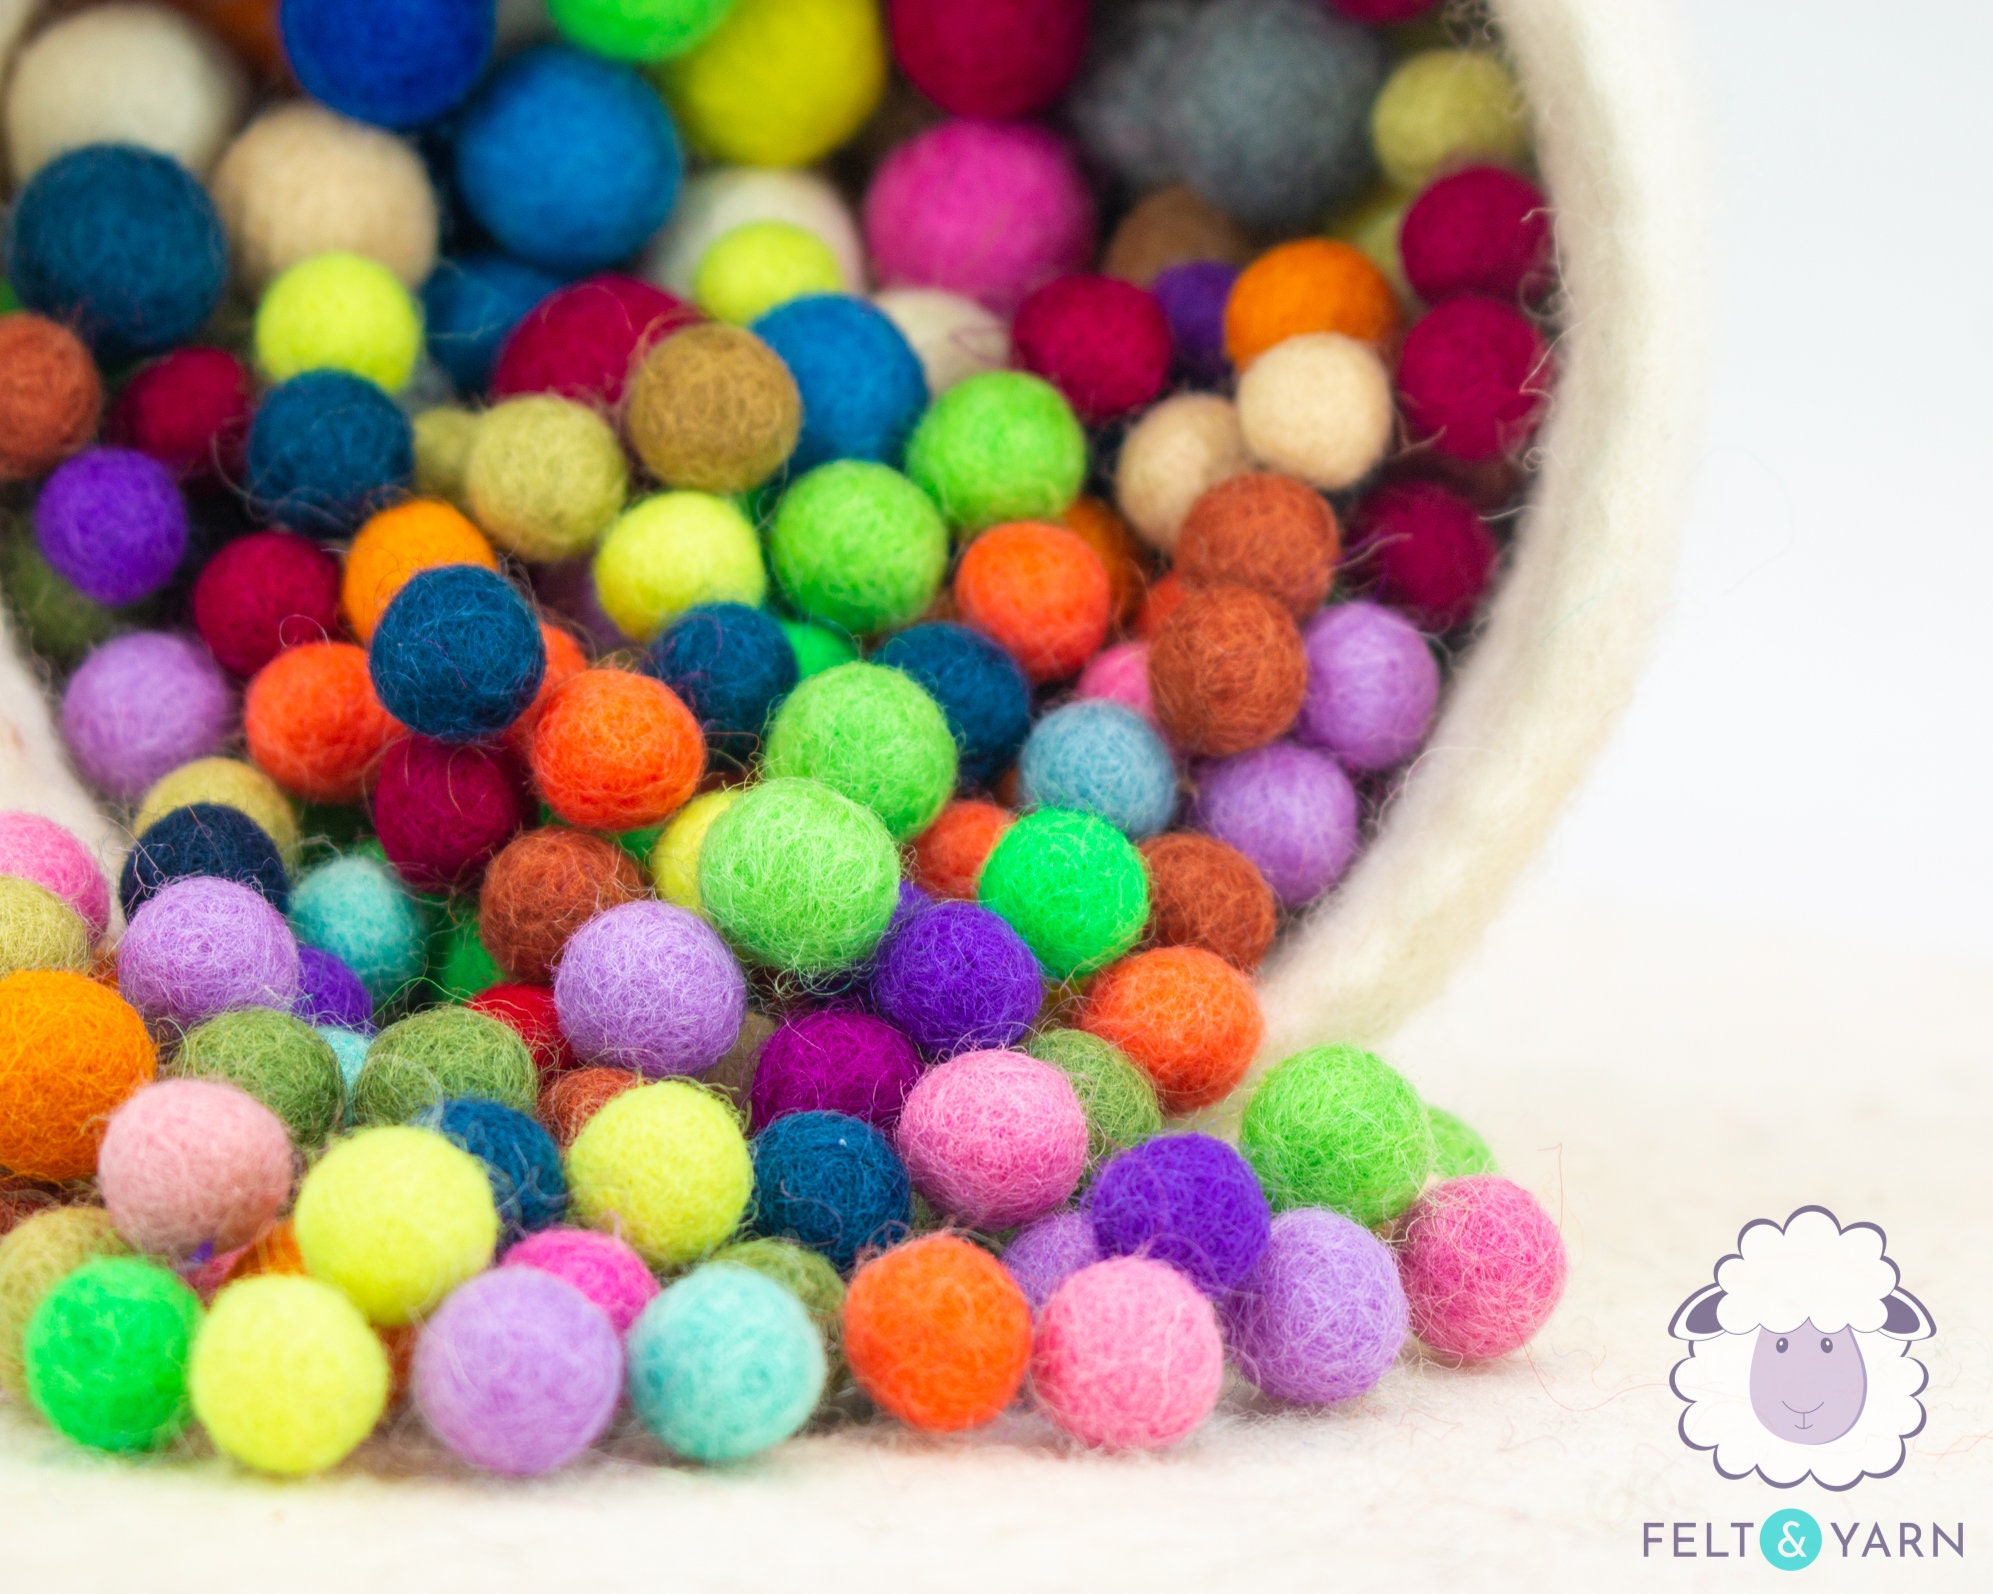 1.5CM - Tiny Wool Felt Balls - Colorful Felt Balls - 1.5CM Felt